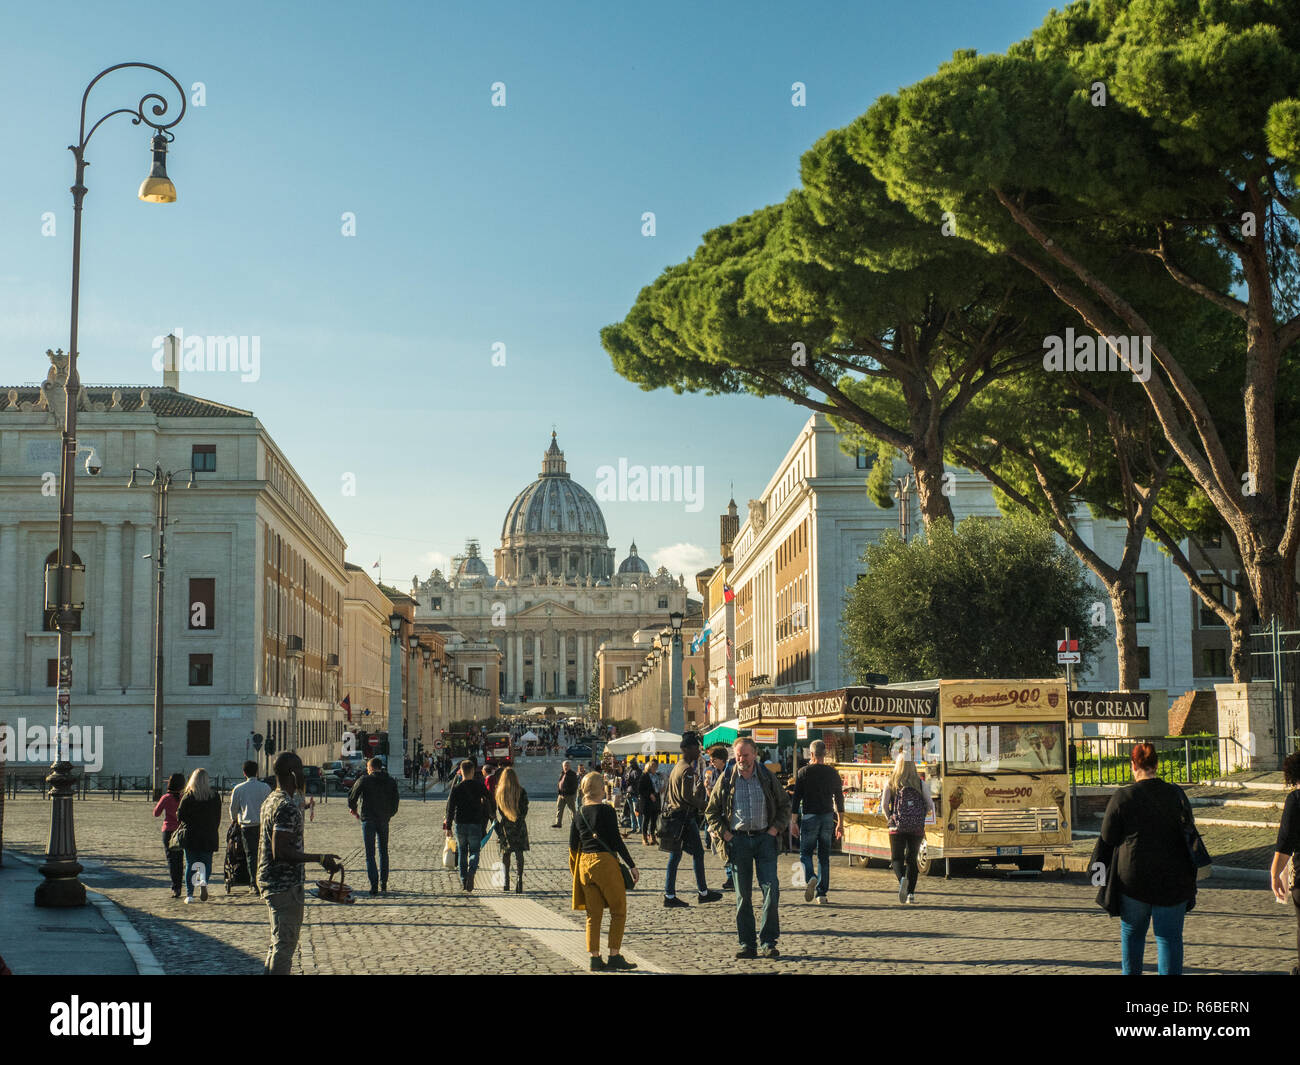 Blick auf den Petersdom in der Vatikanstadt, der päpstlichen Enklave in Rom, Italien. Der Weihnachtszeit. Stockfoto